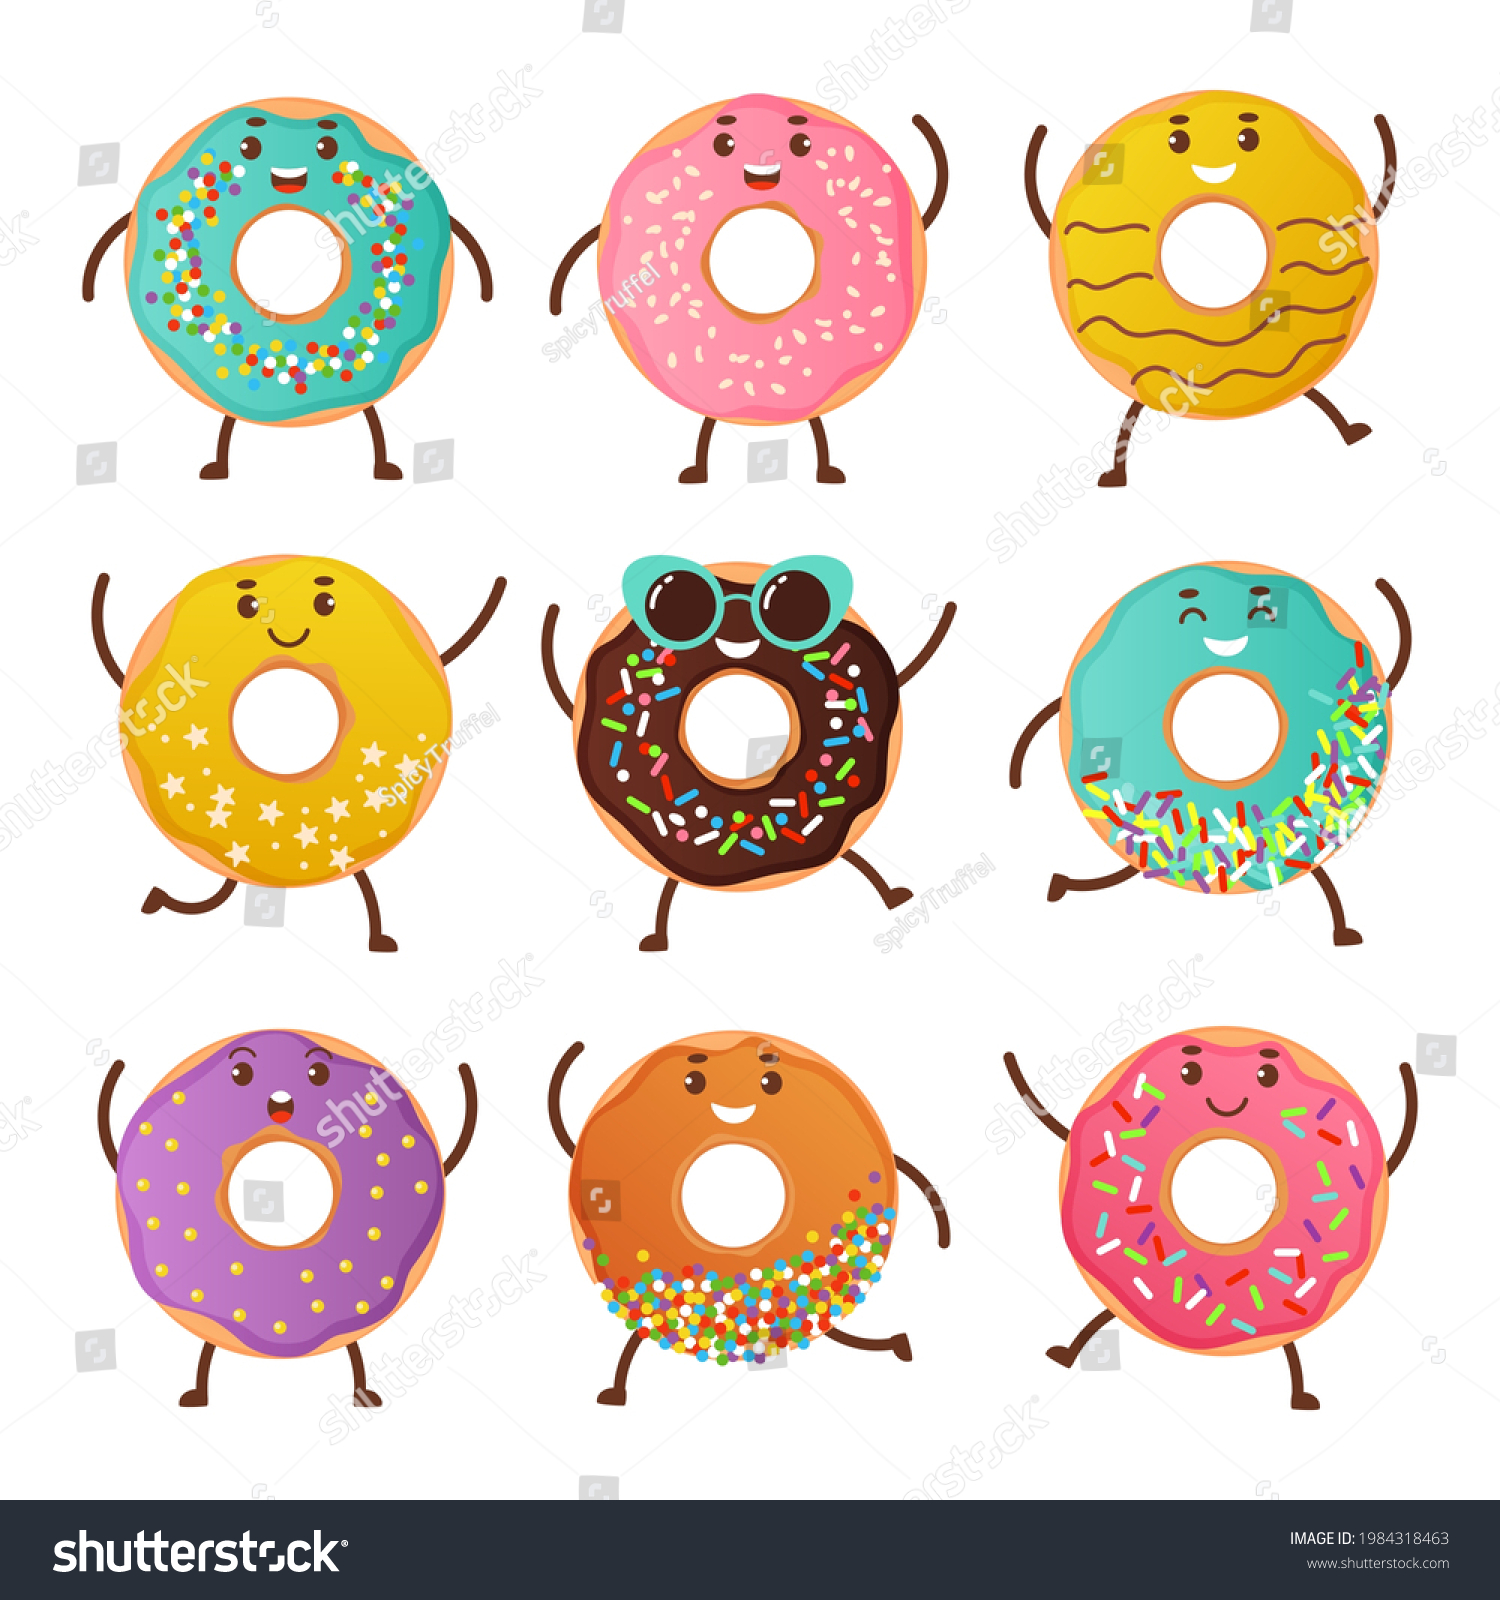 147,056 Dessert characters Images, Stock Photos & Vectors | Shutterstock